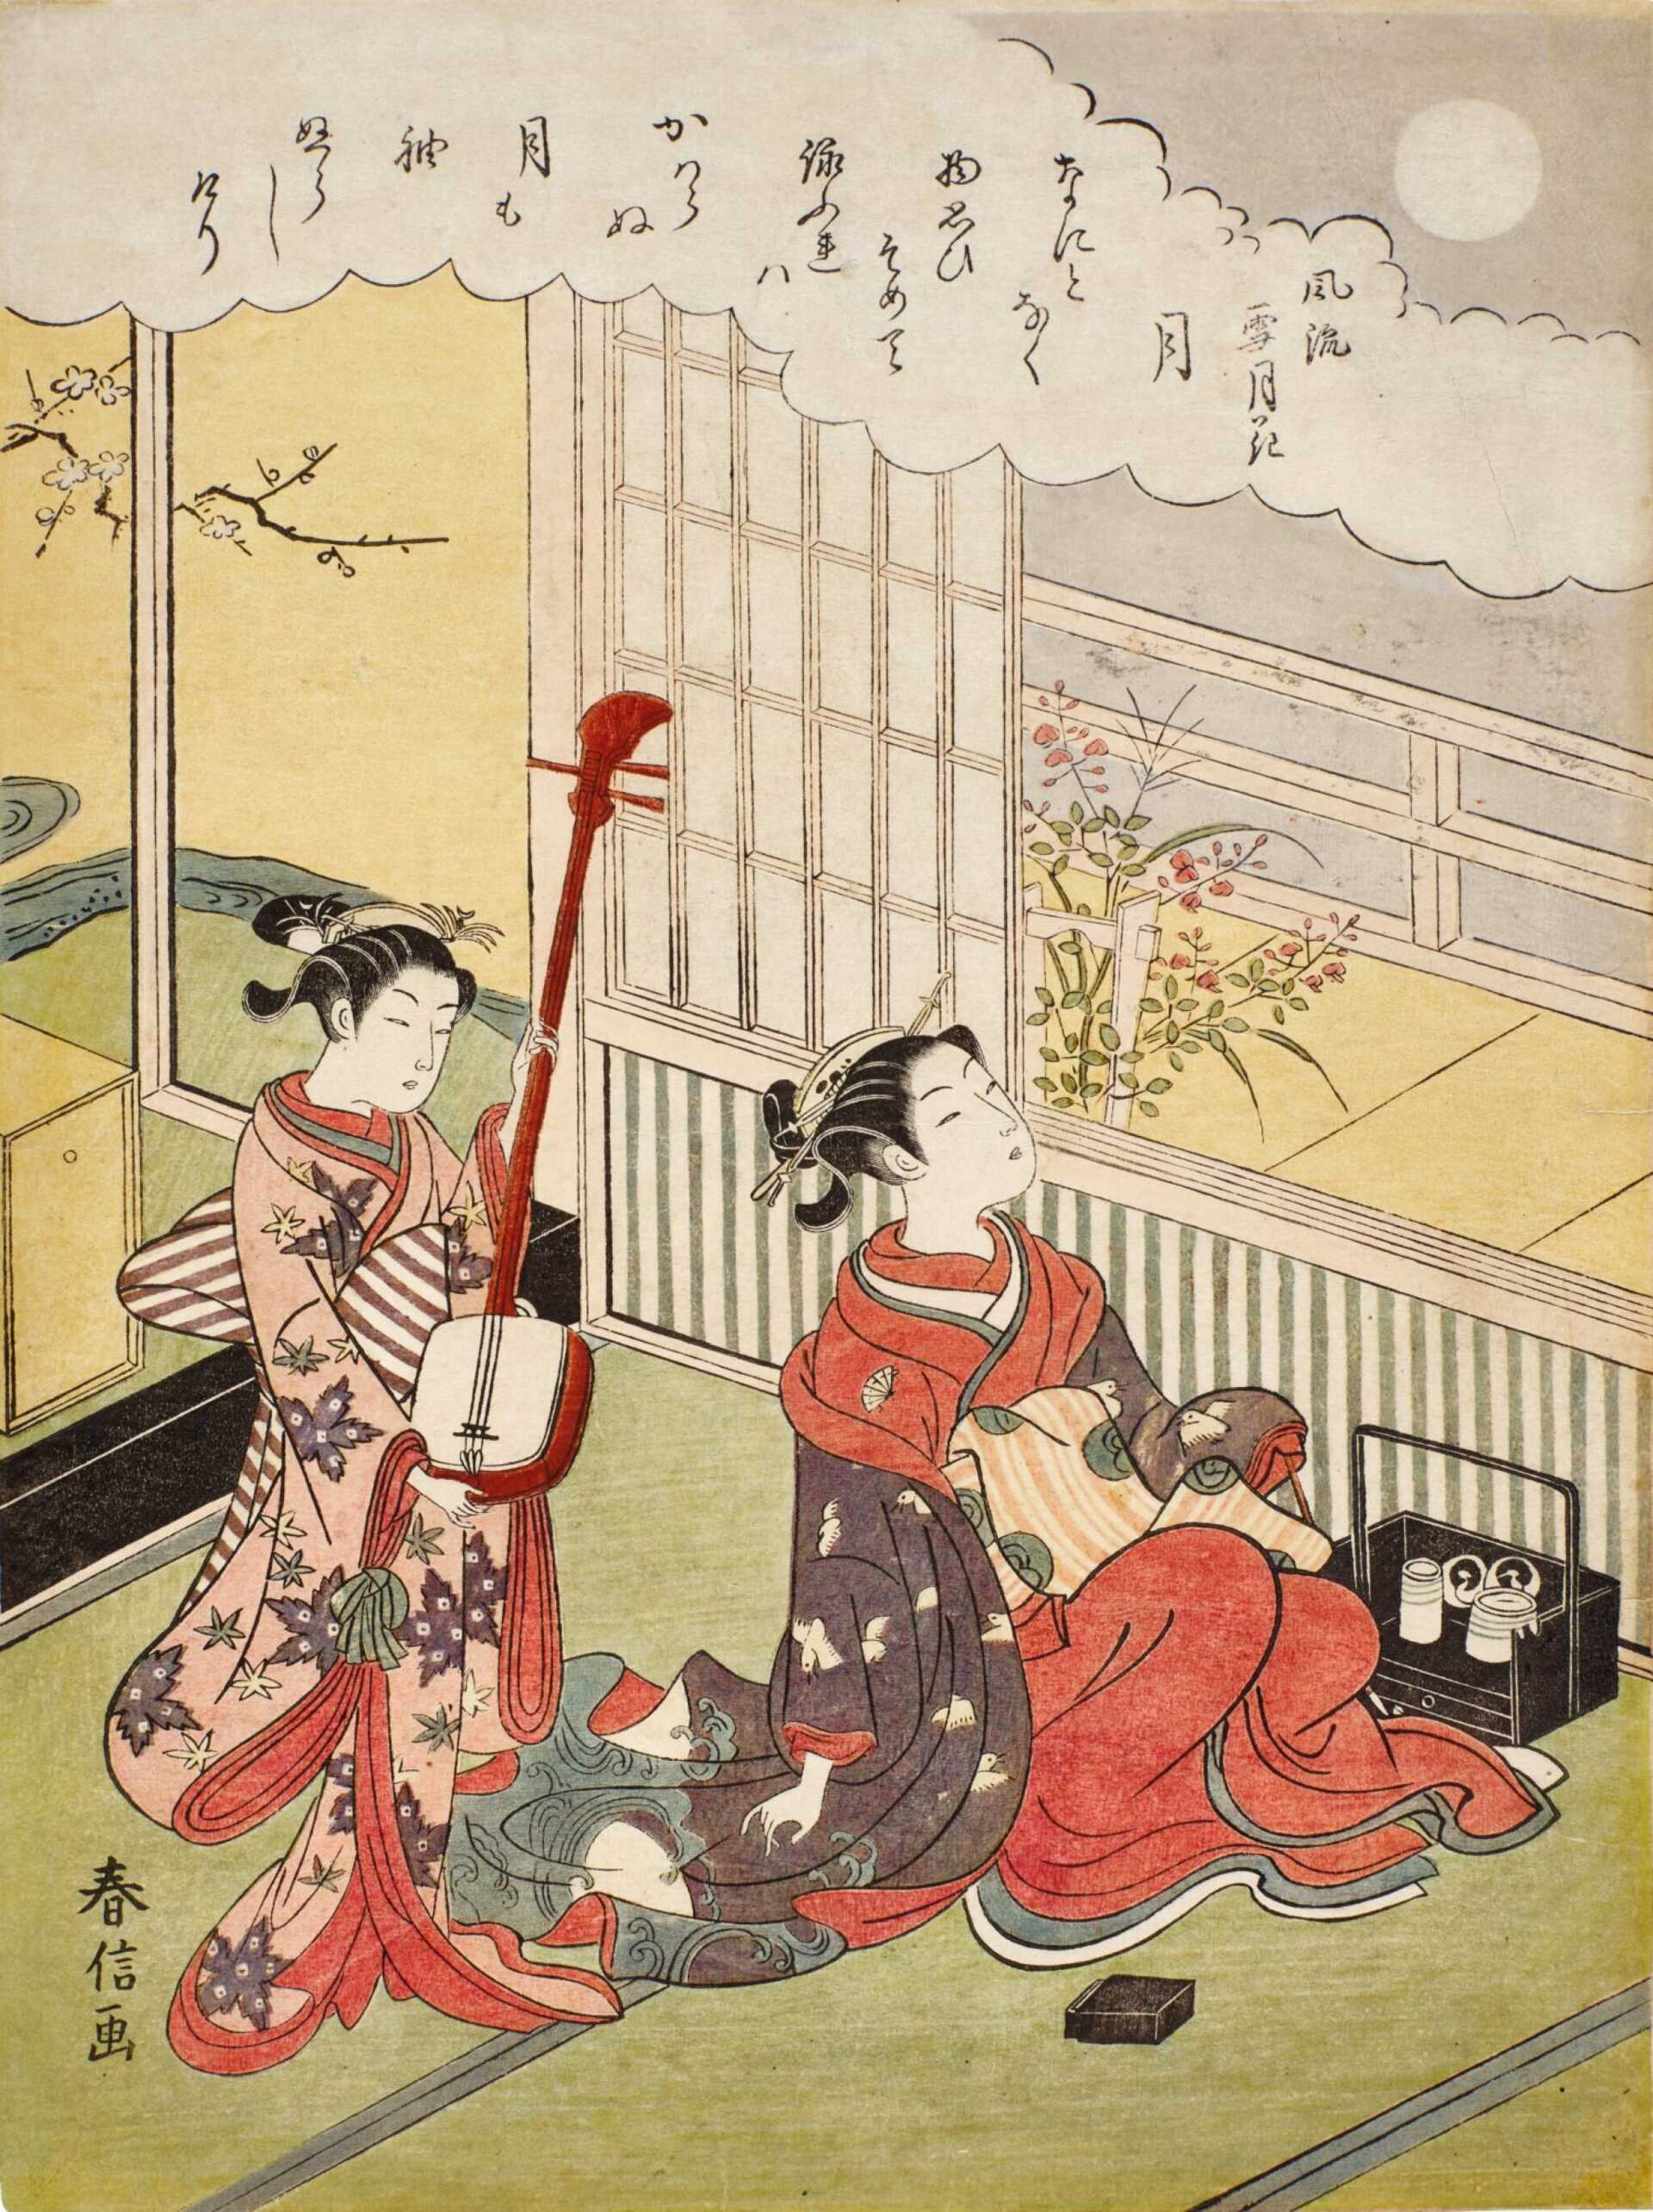 Suzuki Haruonbu (1725-1770) | Moon (Tsuki) | Edo period, 18th century